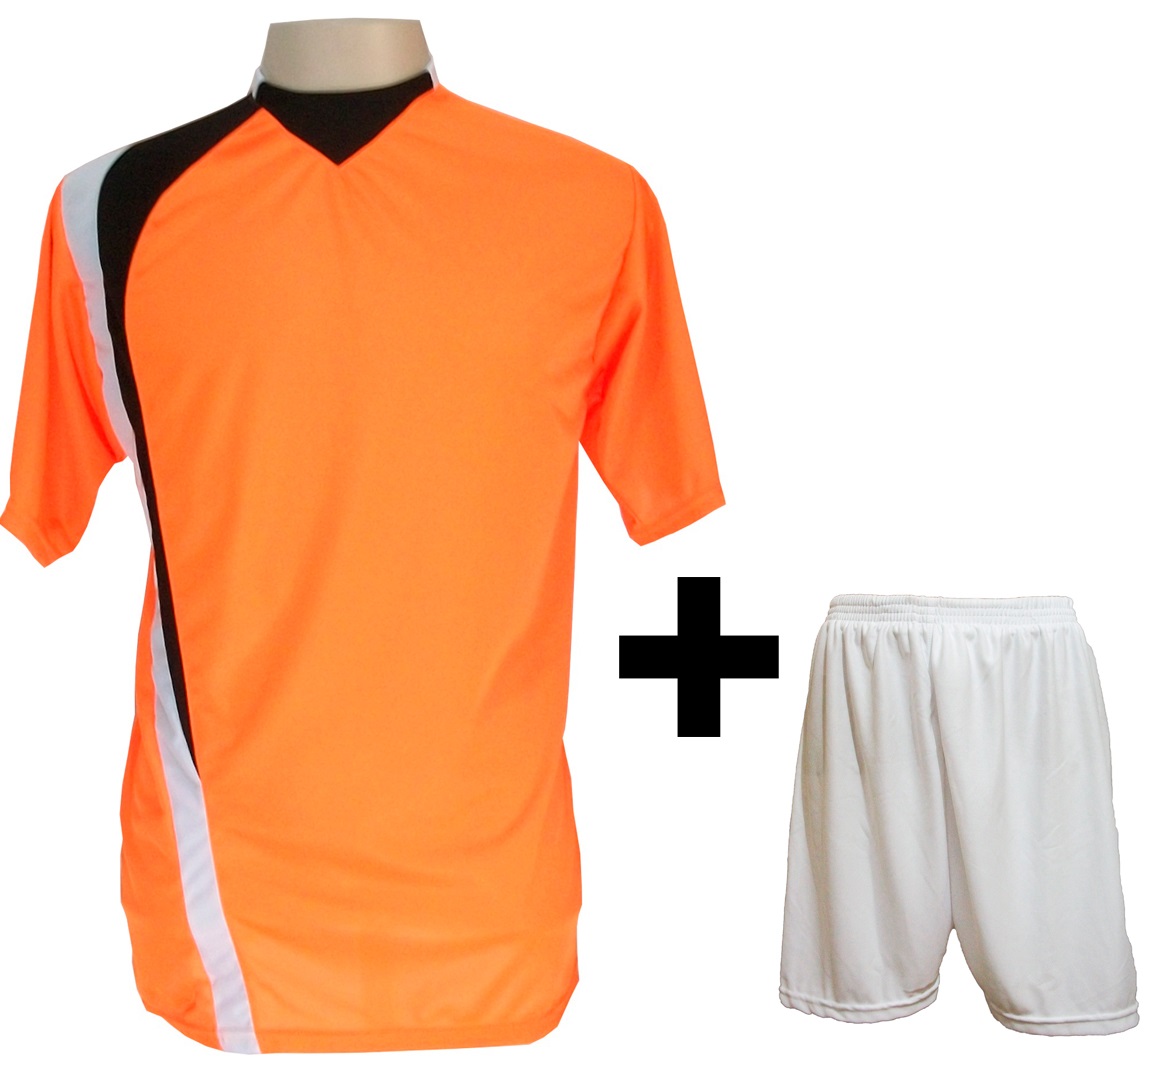 Uniforme Esportivo com 14 camisas modelo PSG Laranja/Preto/Branco + 14 calções modelo Madrid Branco + Brindes